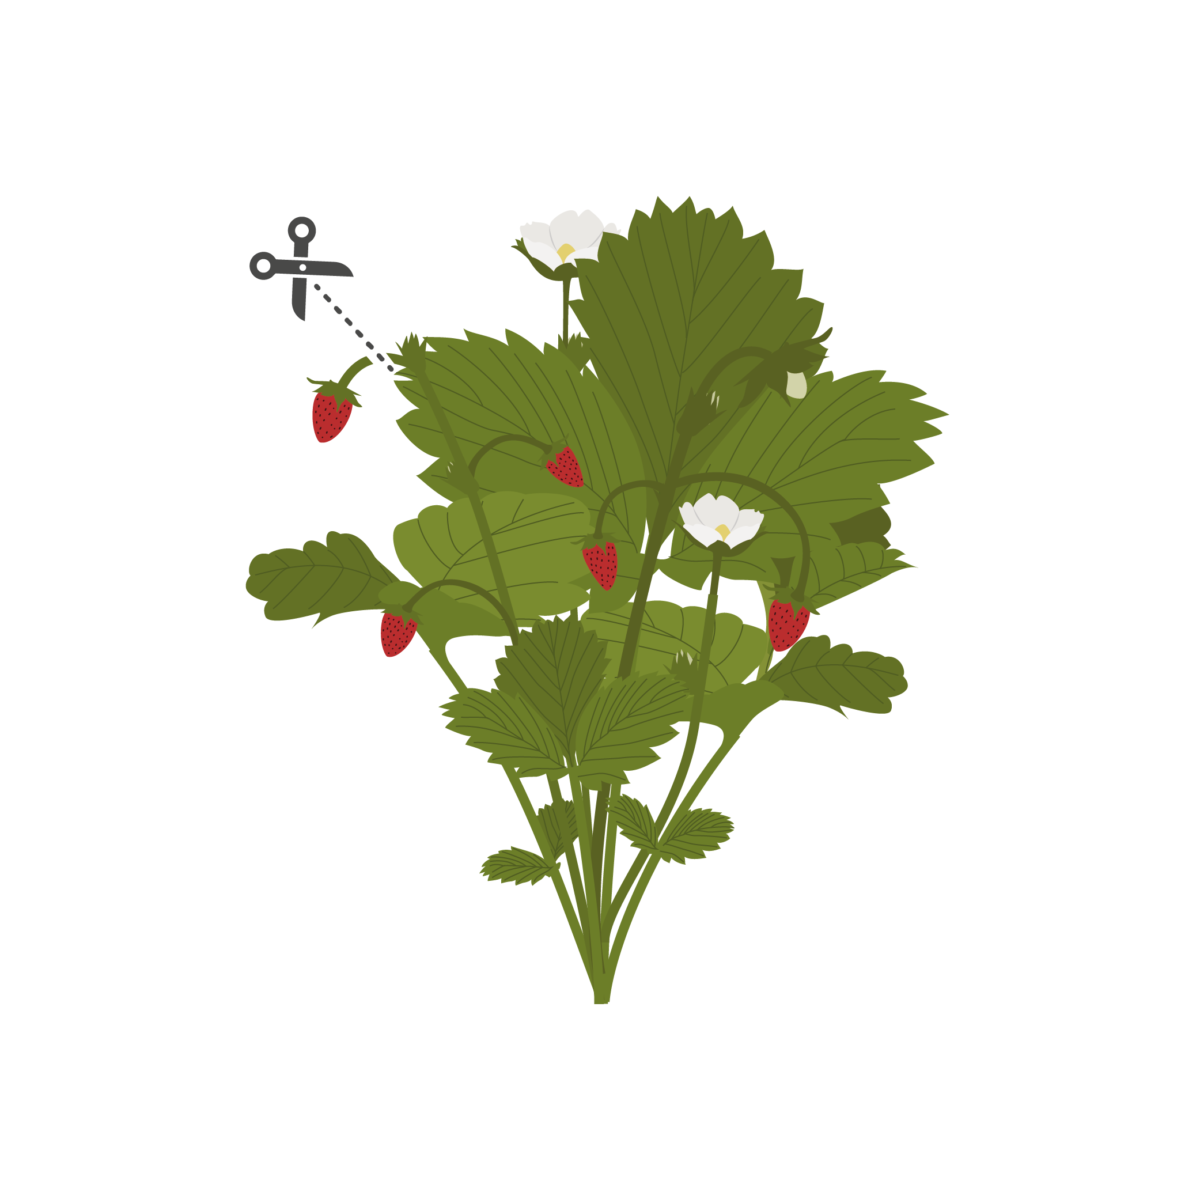 VERITABLE Lingot® Wild Red Strawberry - Червени диви Ягоди